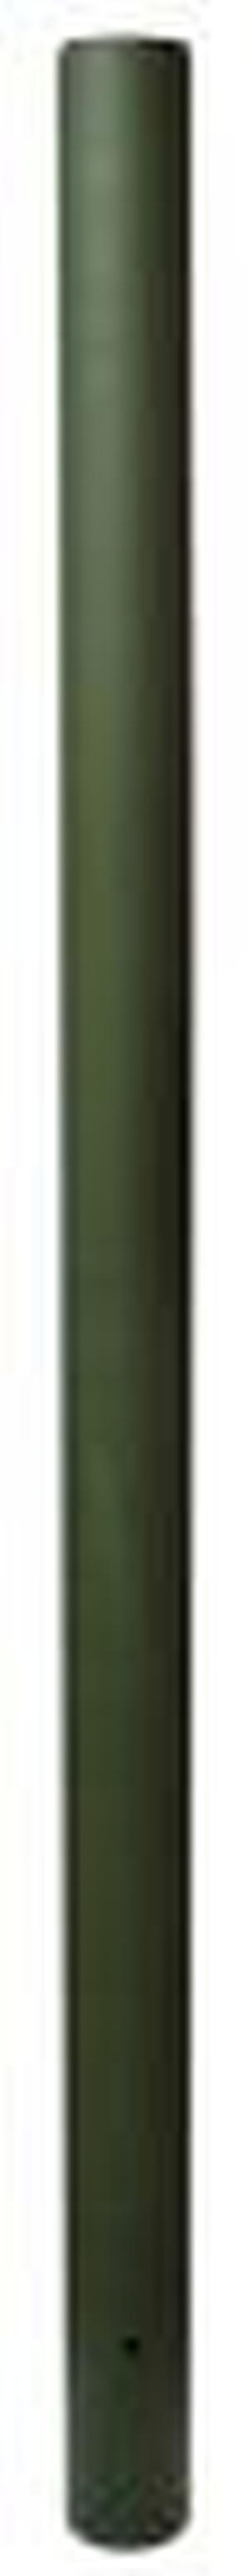 ФОТОГРАФИЯ Заборный столб пластиковый 2,2м с заглушкой диаметр 83мм 2шт/уп (Хаки)